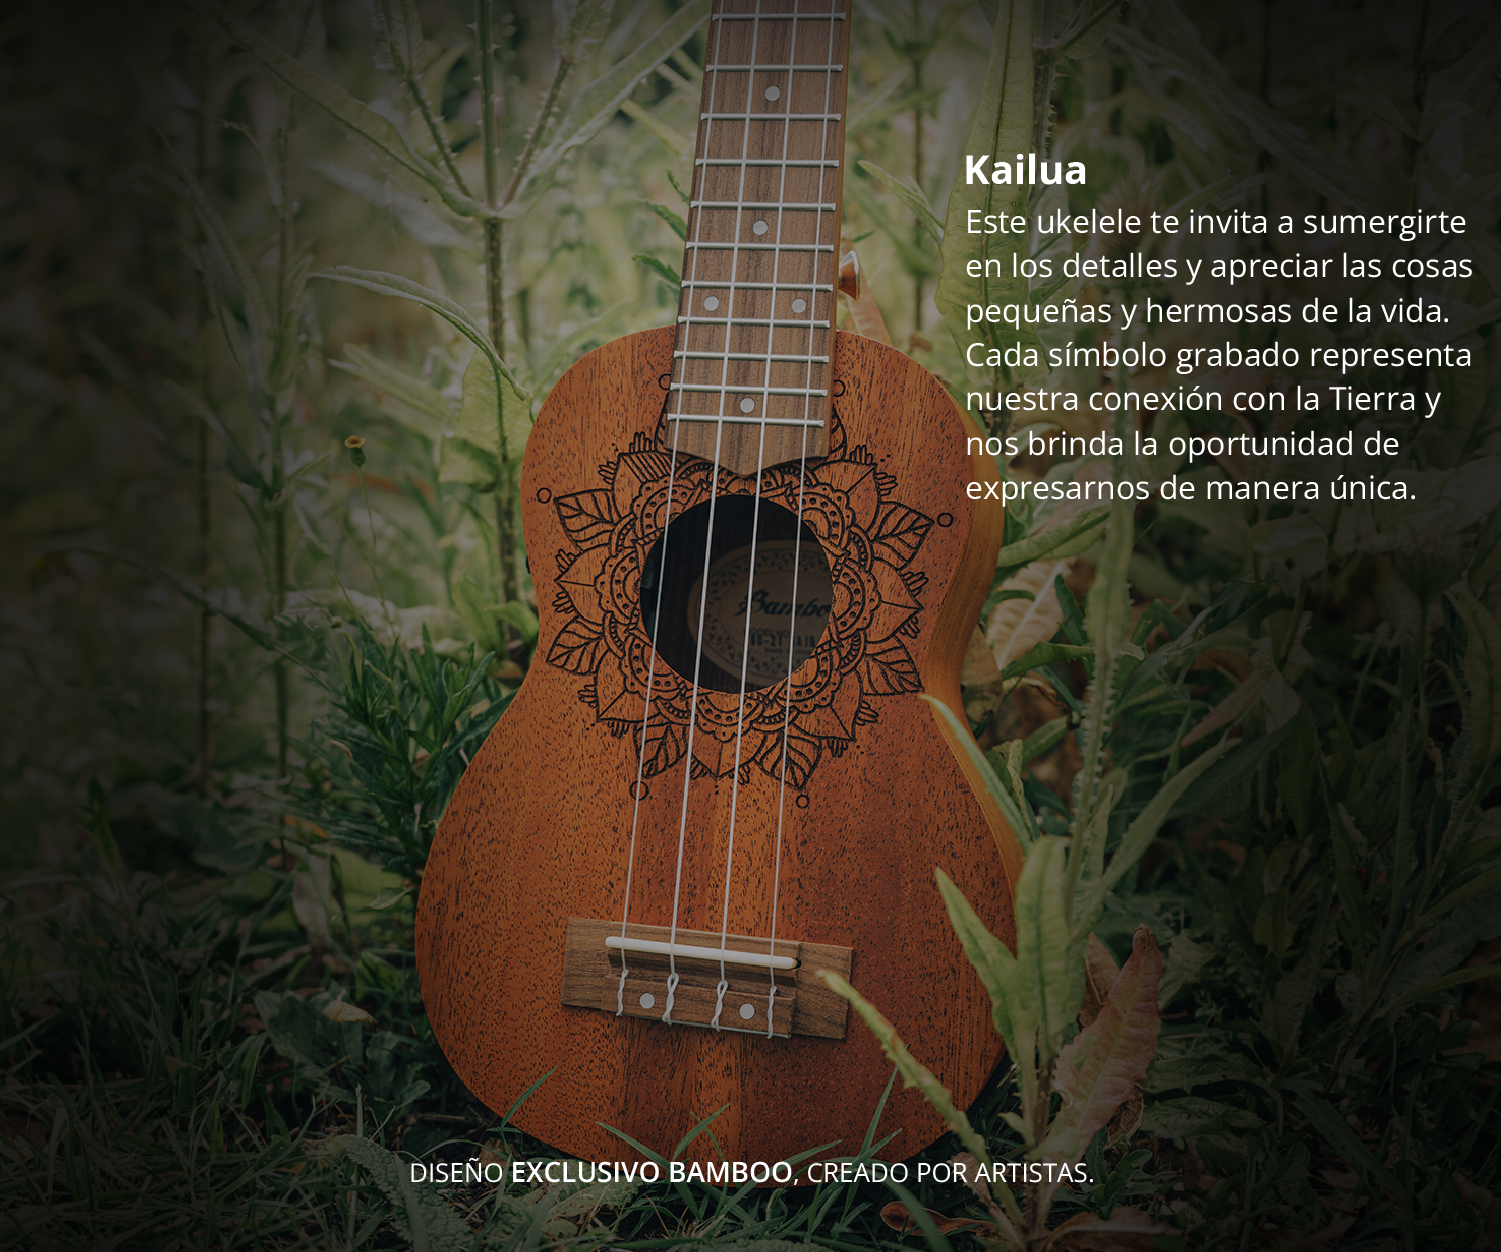 Bamboo Musica